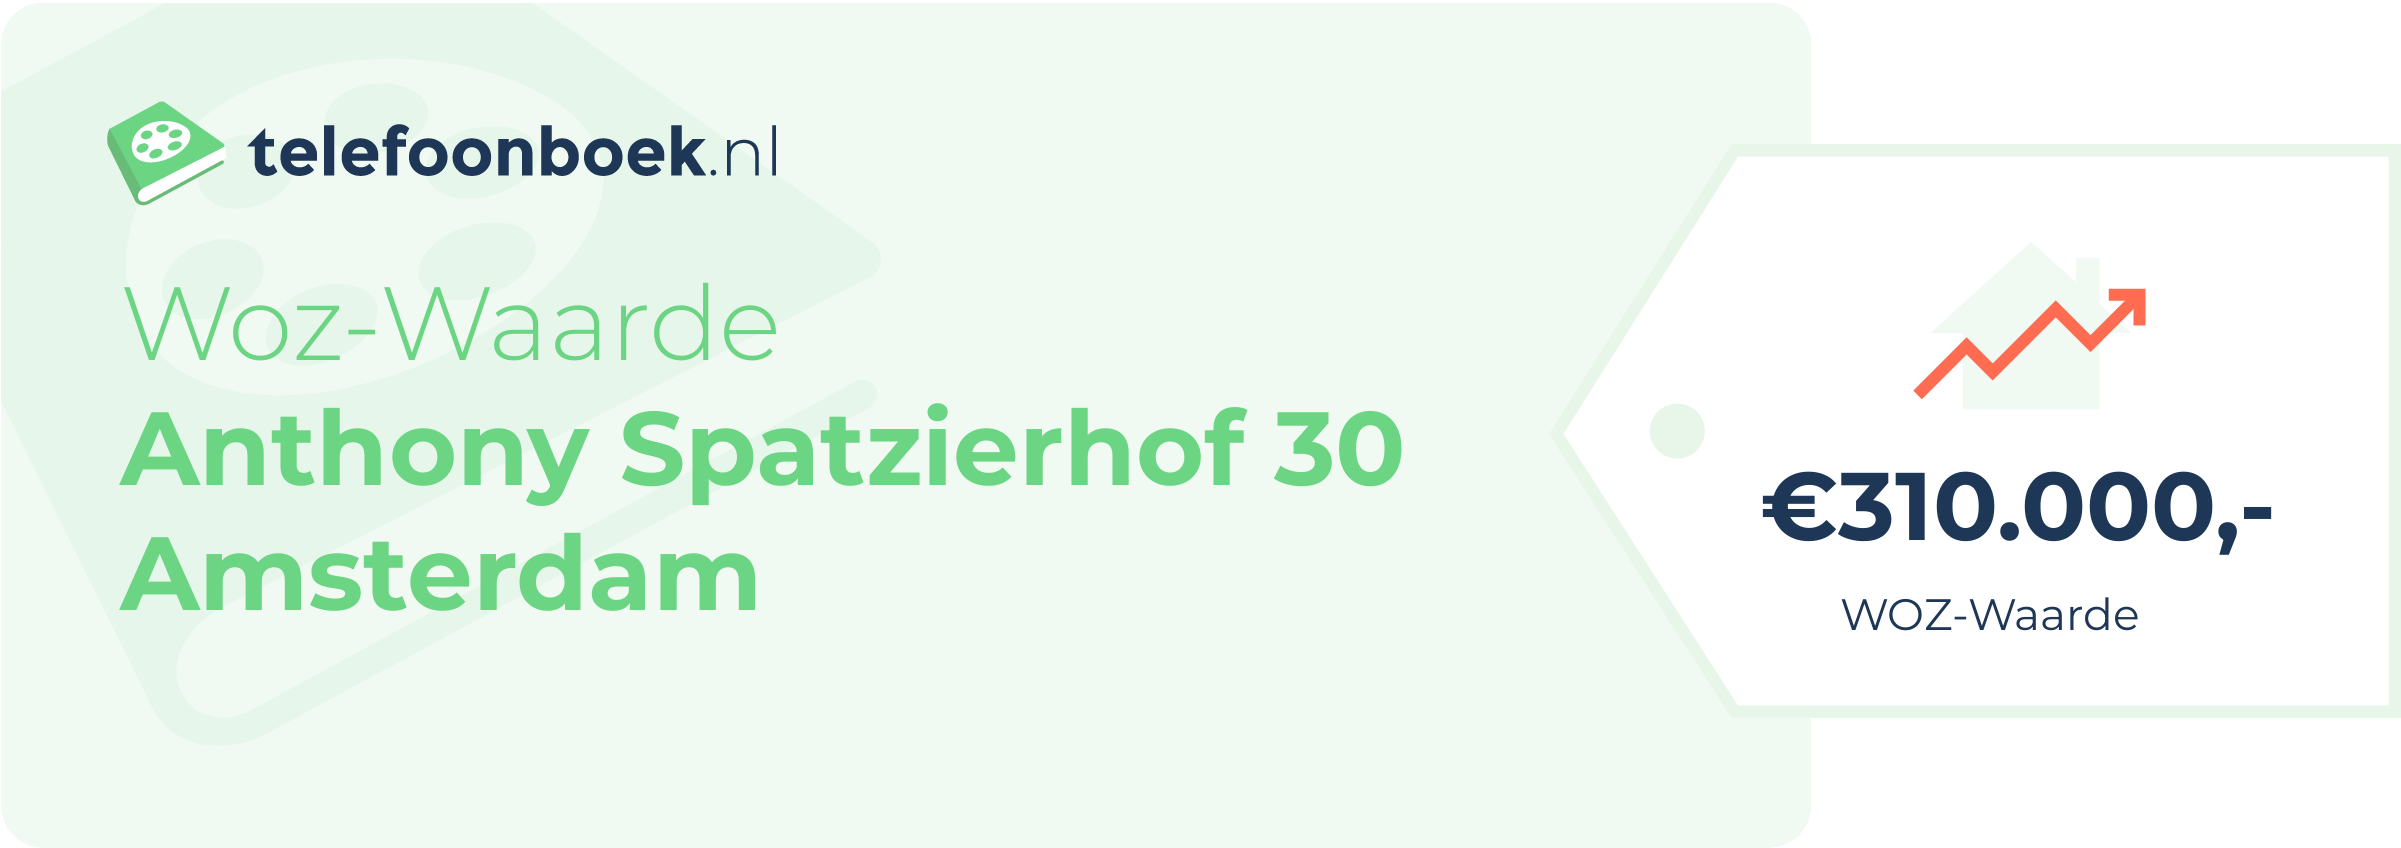 WOZ-waarde Anthony Spatzierhof 30 Amsterdam